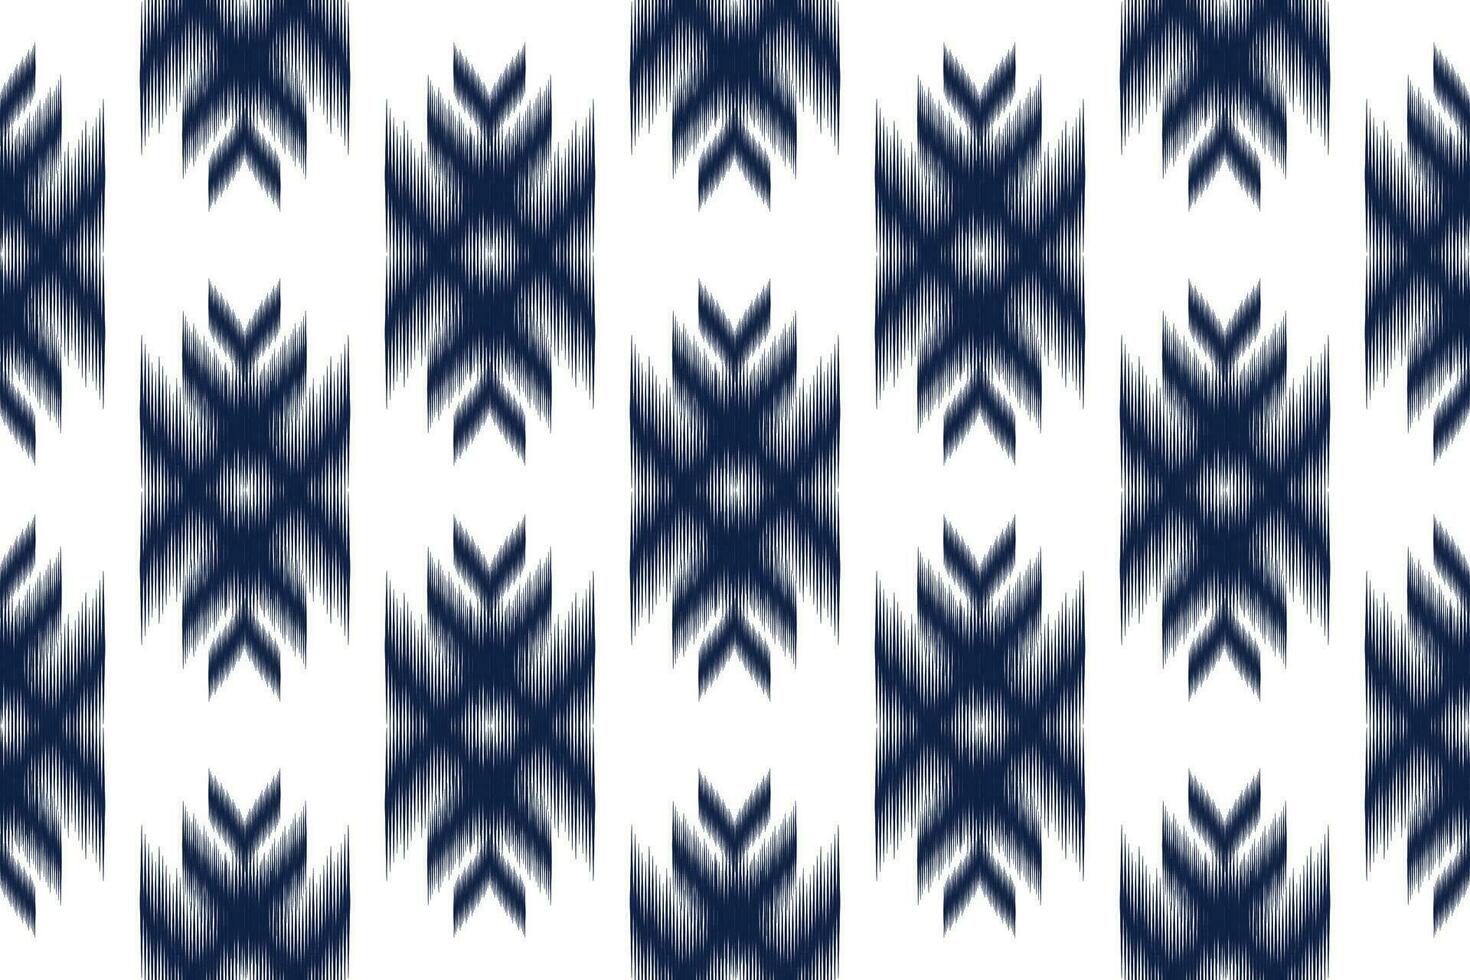 geometrisk etnisk sömlös mönster traditionell. amerikansk, mexikansk stil. design för bakgrund, tapet, illustration, tyg, Kläder, matta, textil, batik, broderi. vektor